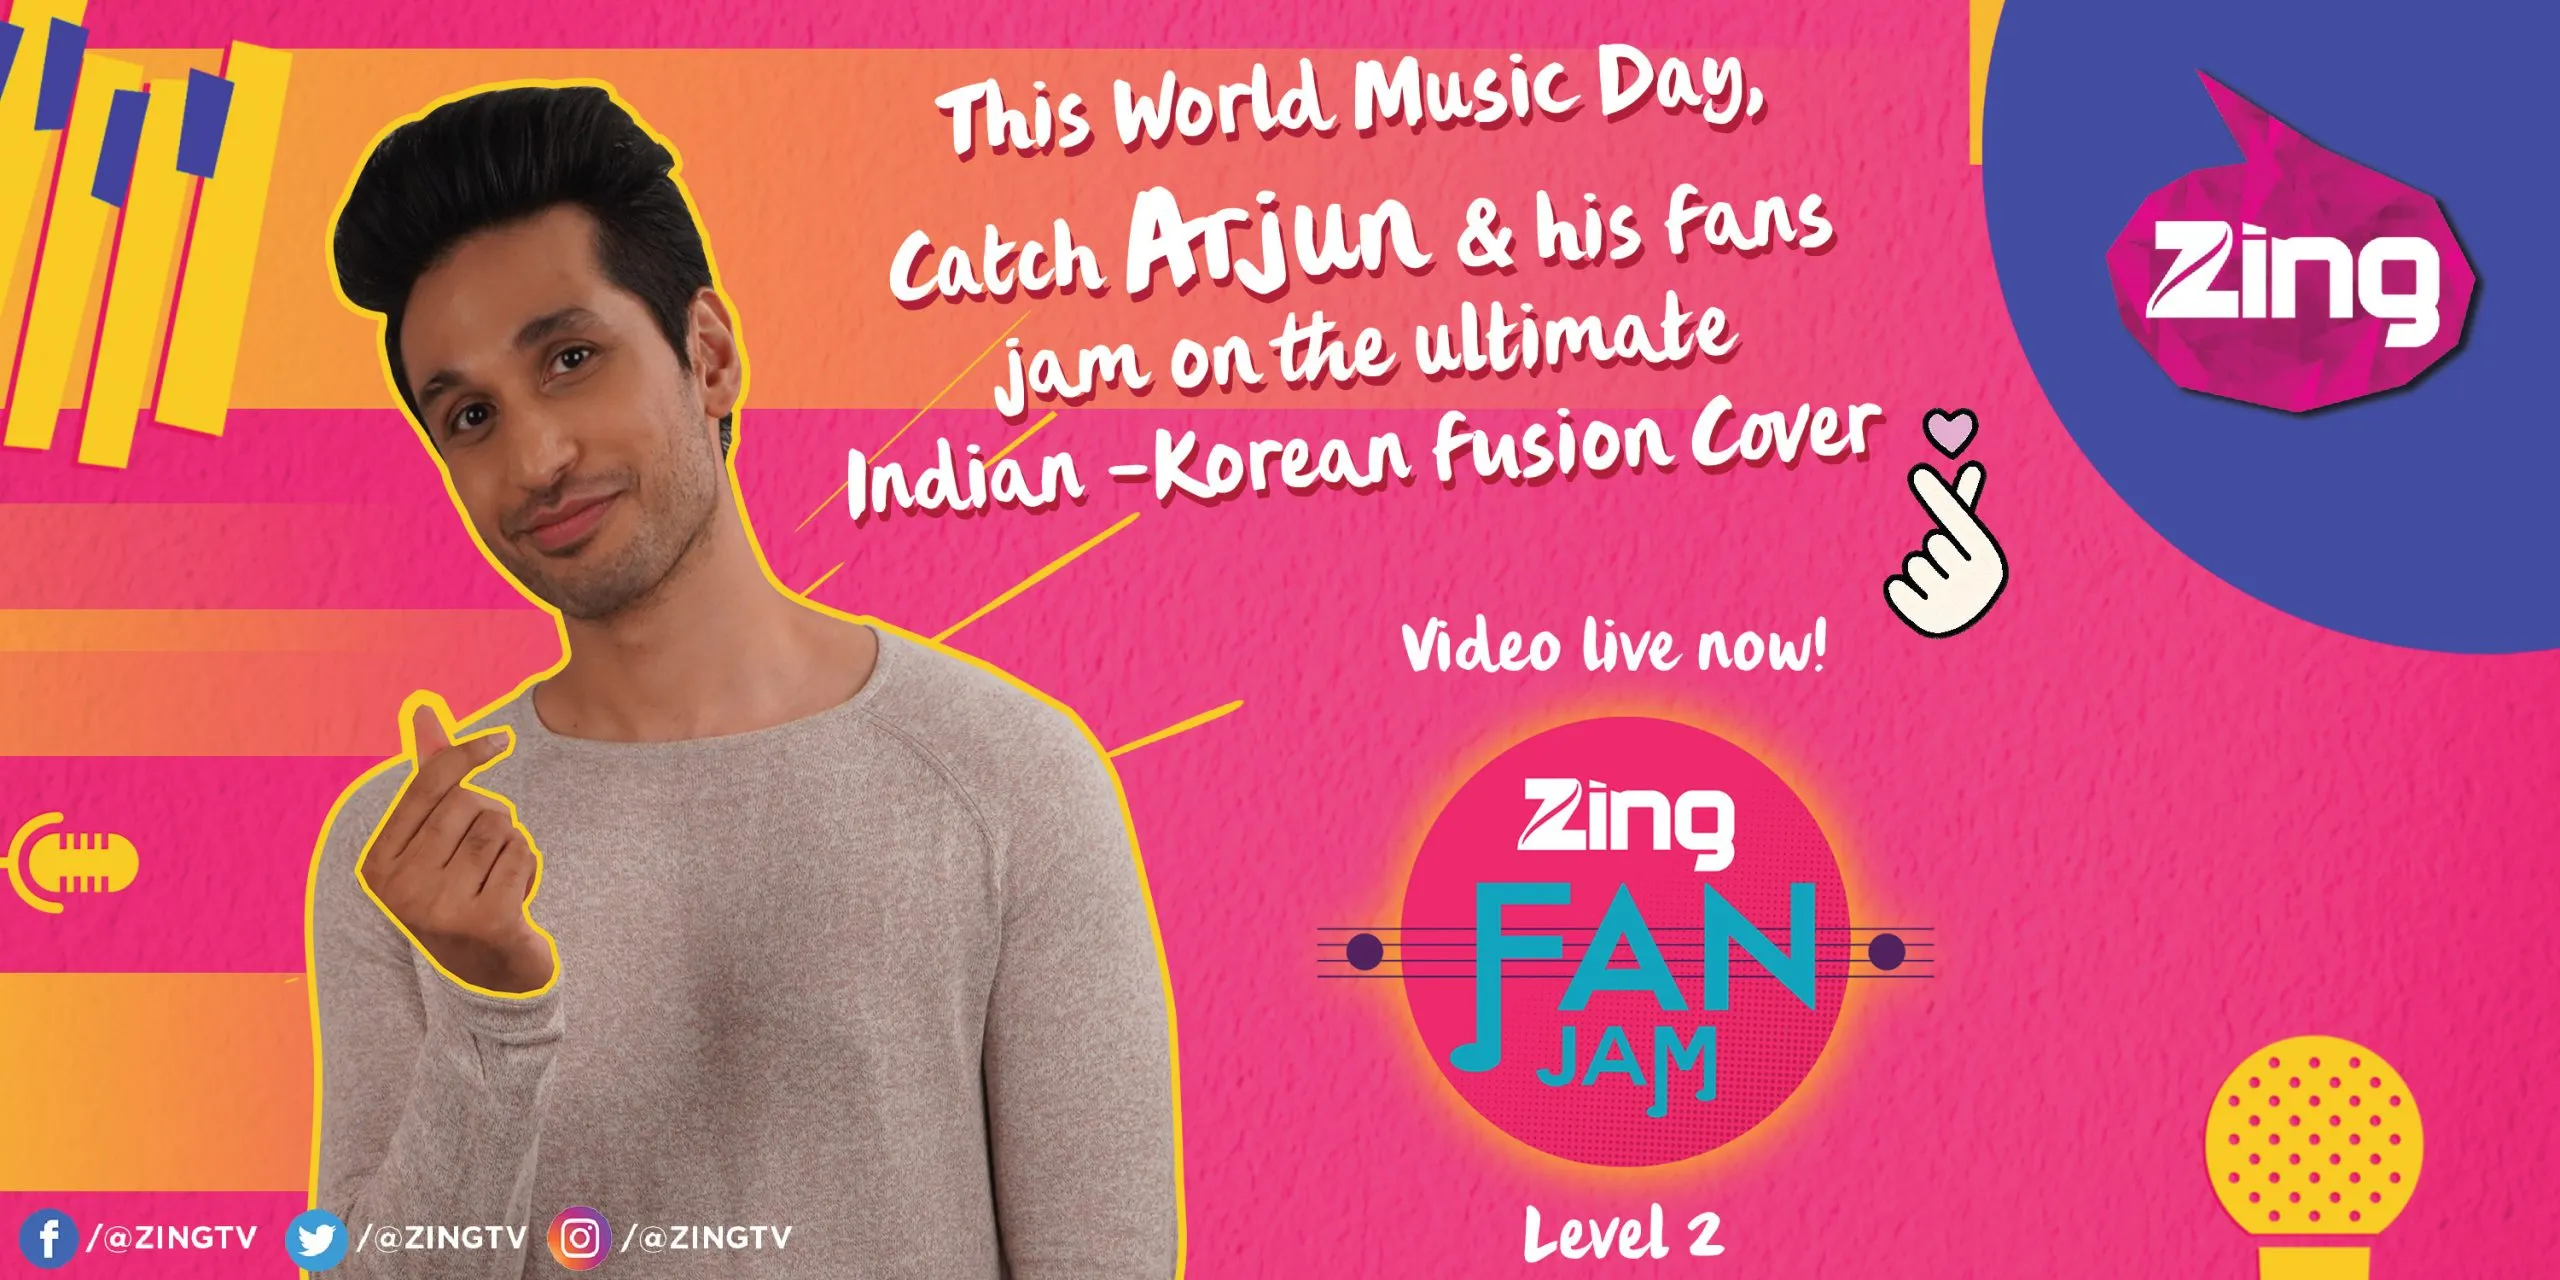 विश्व संगीत दिवस पर भारतीय-कोरियाई संगीत कवर वीडियो के लिए ‘जिंग’ ने मिलाया अर्जुन कानूनगो से हाथ